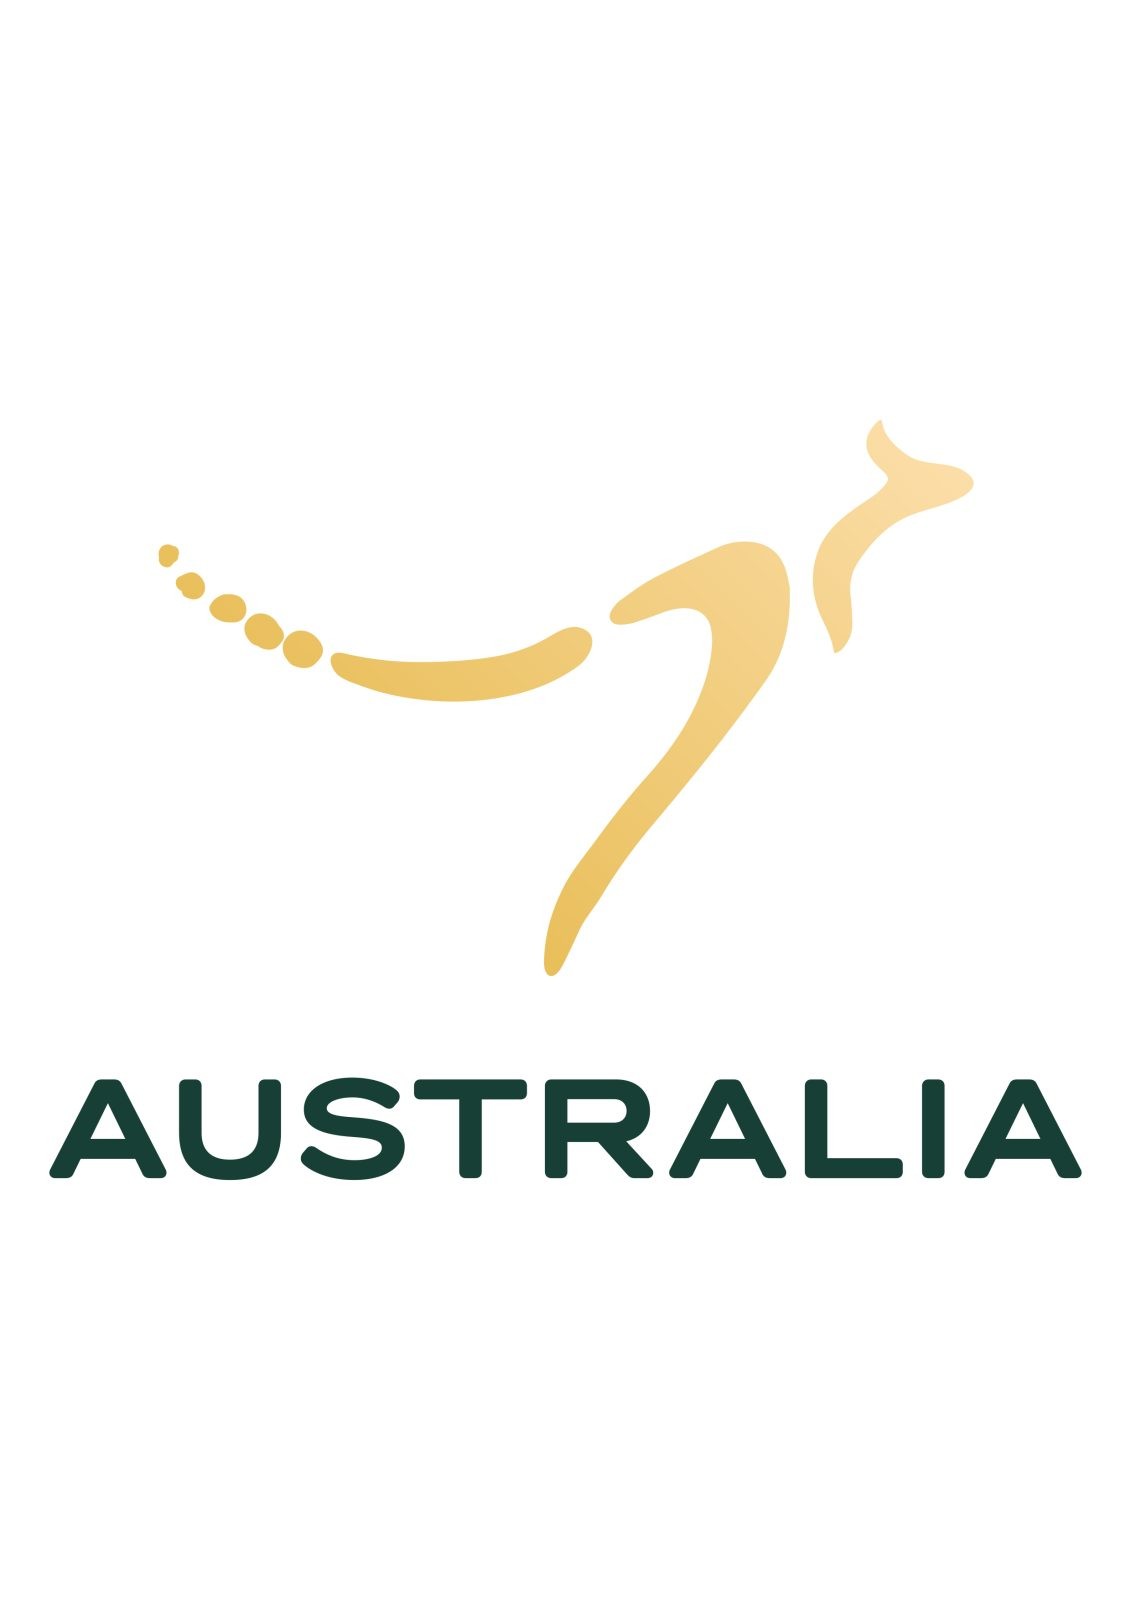 Australia’s Nation Brand Mark – Illustration for Graphic Design